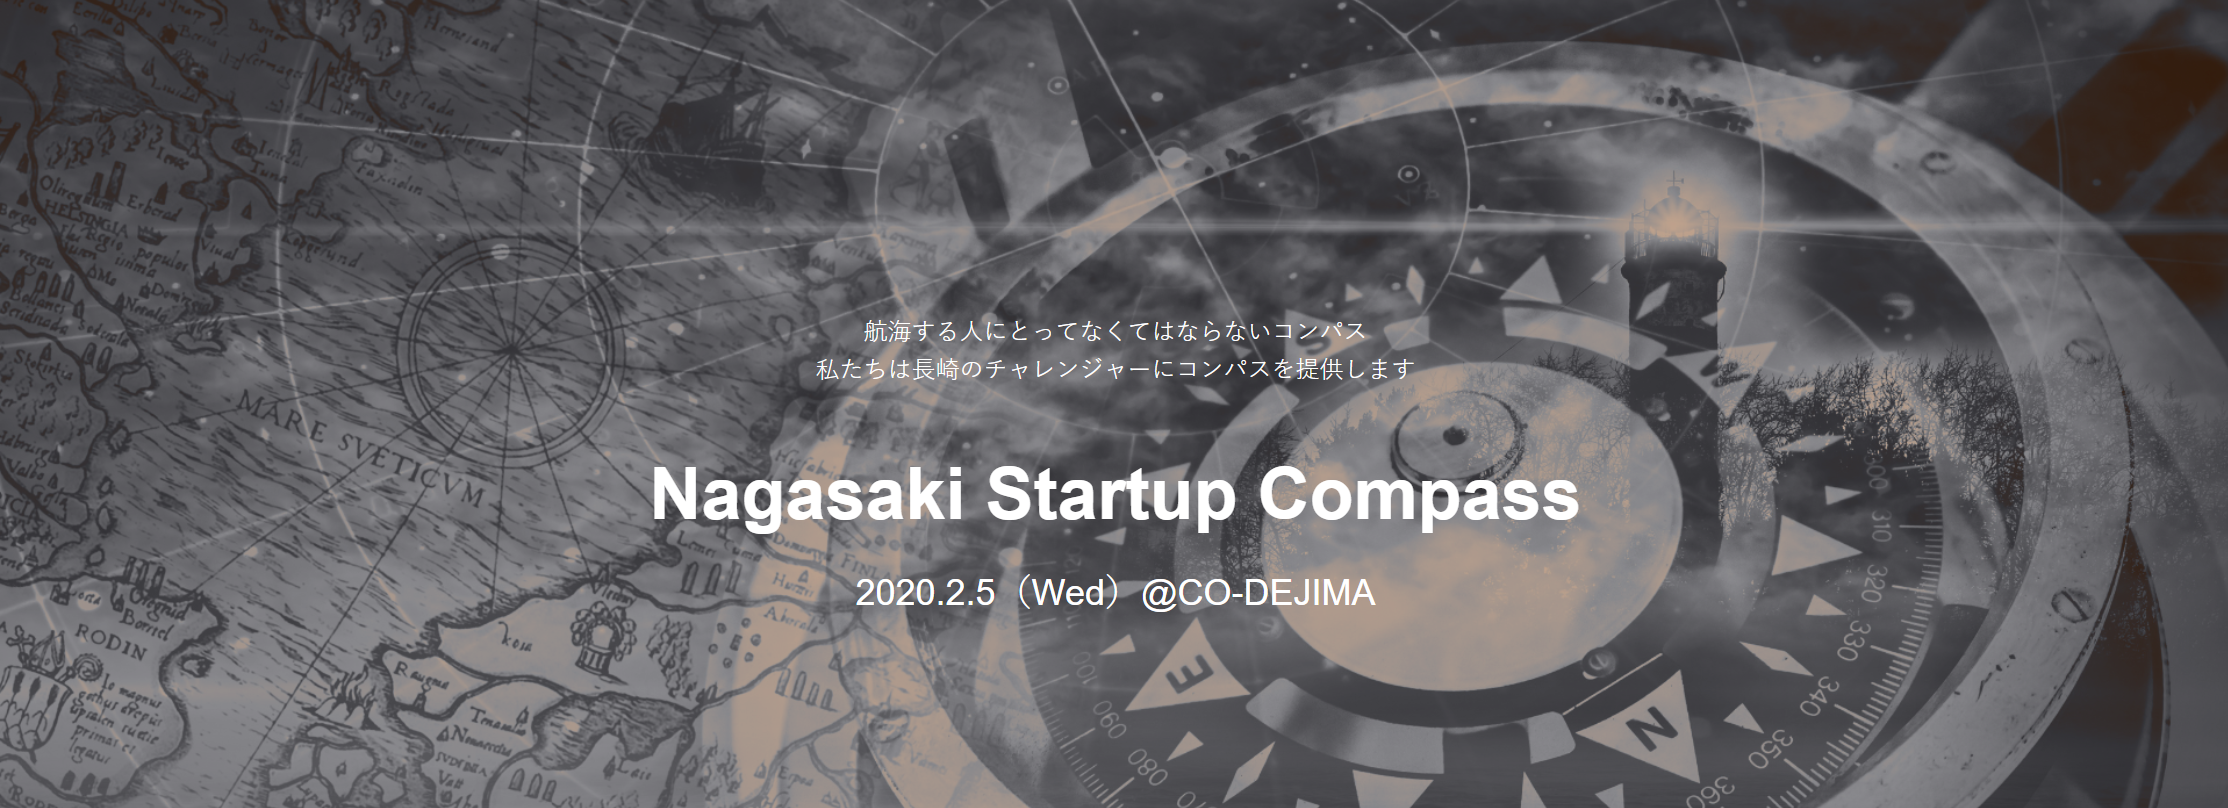 Nagasaki Startup Compass